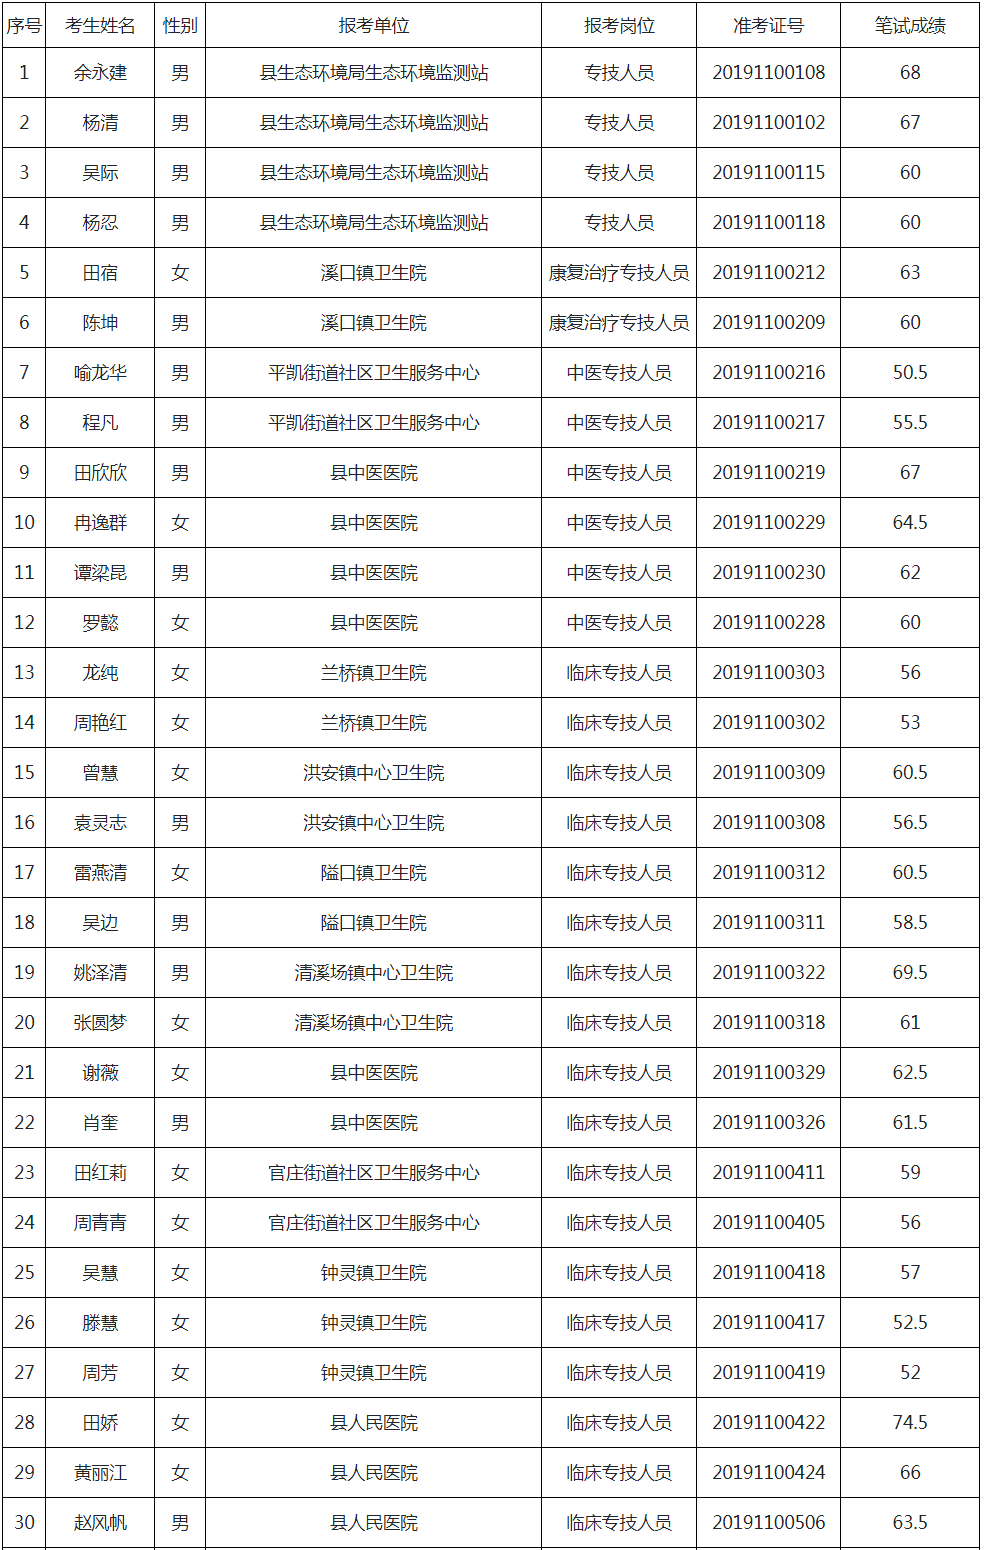 重庆市秀山土家族苗族自治县2019年公开招聘事业单位专业技术人员进入资格审查人员名单